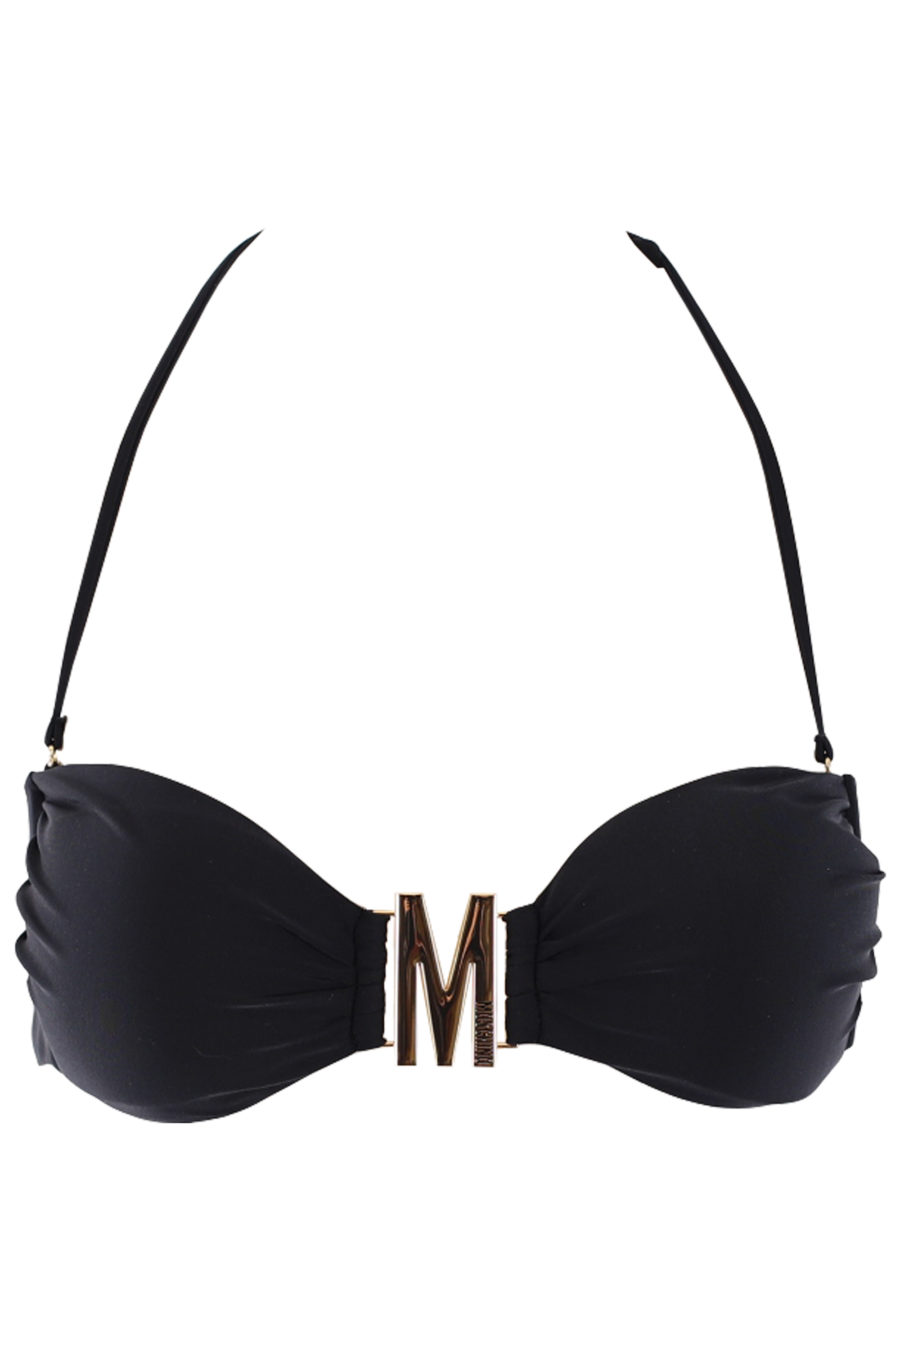 Top de bikini negro con logo M en dorado - IMG 0671